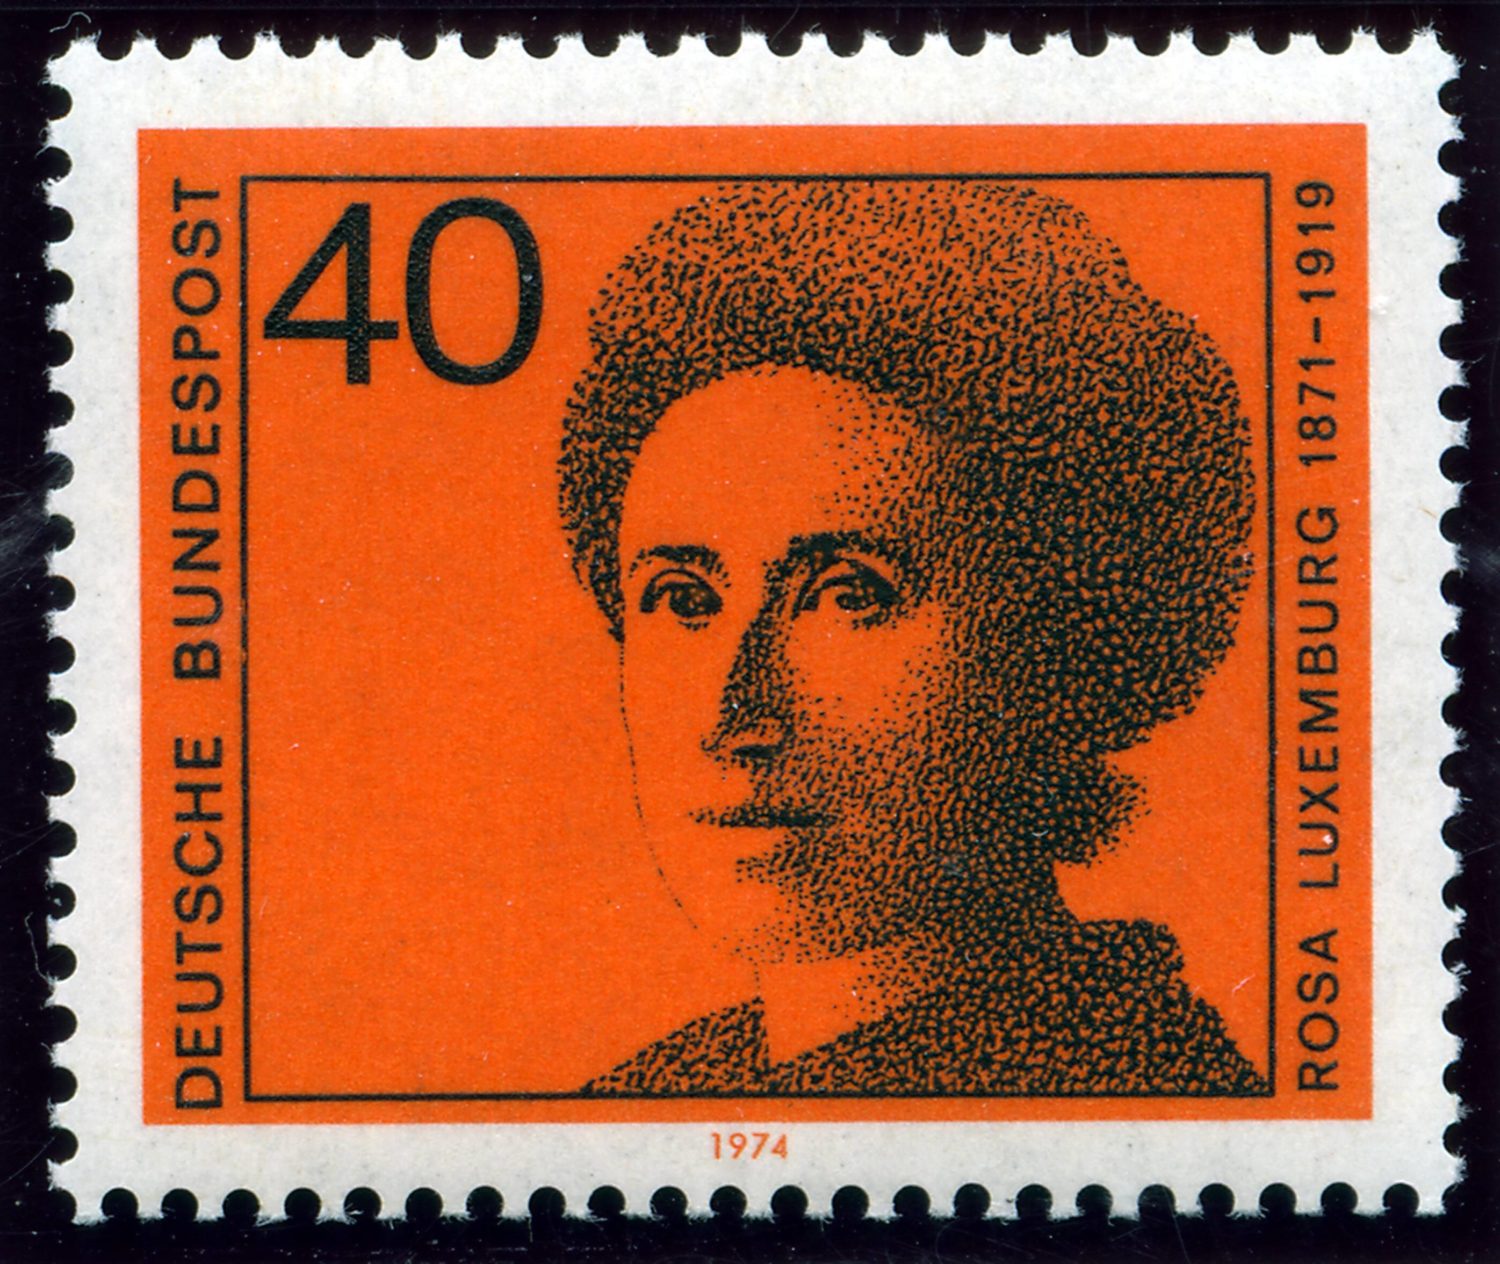 Rosa Luxemburg auf einer Briefmarke der Deutschen Bundespost über 40 Pfennig aus dem Jahre 1974. 